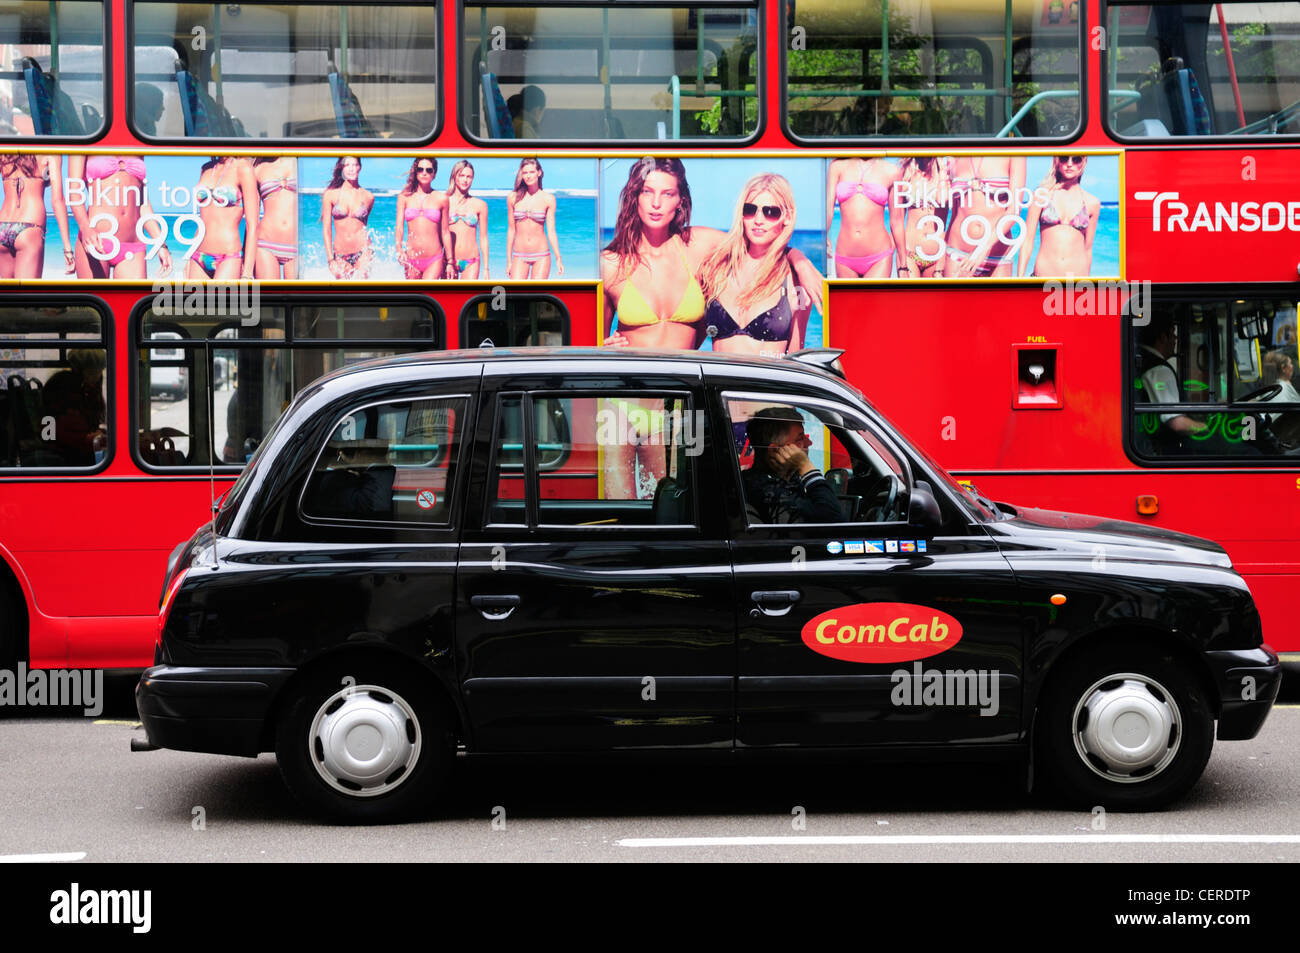 ComCab London Taxi et bus à impériale rouge dans la région de Oxford Street. Banque D'Images